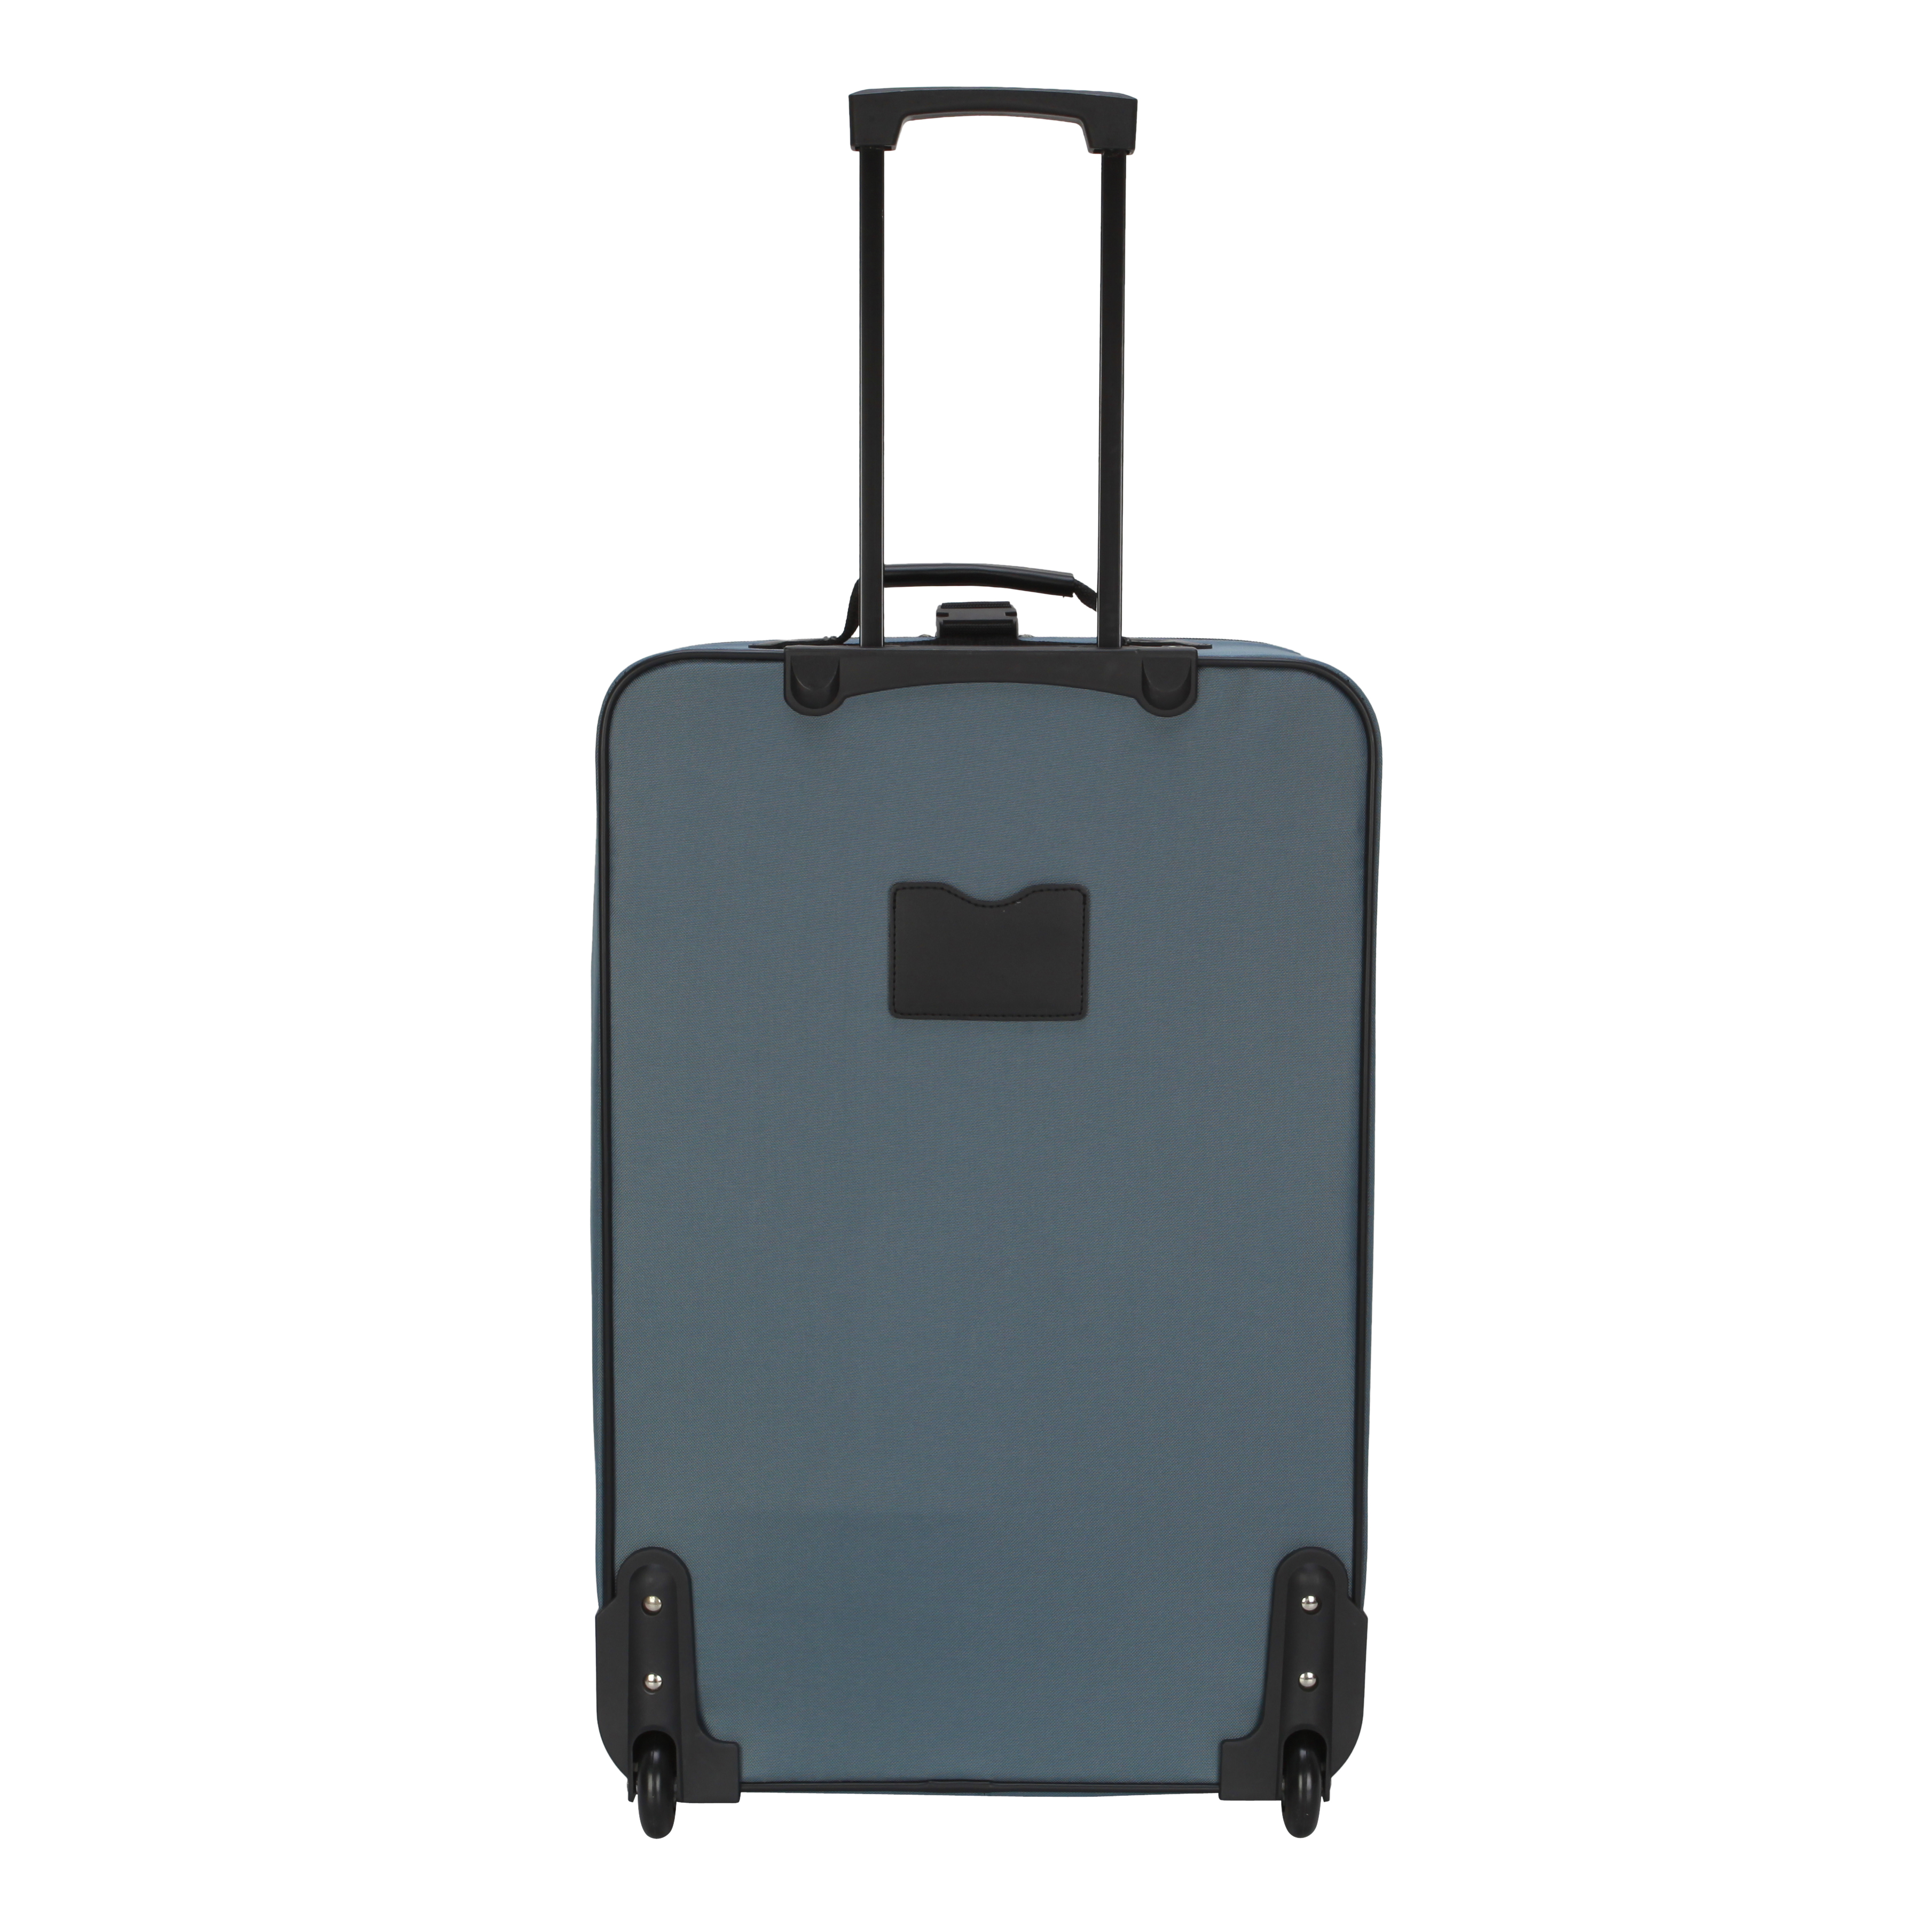 Protege 3-Piece Softside Luggage Value Travel Set - Blue - image 5 of 11